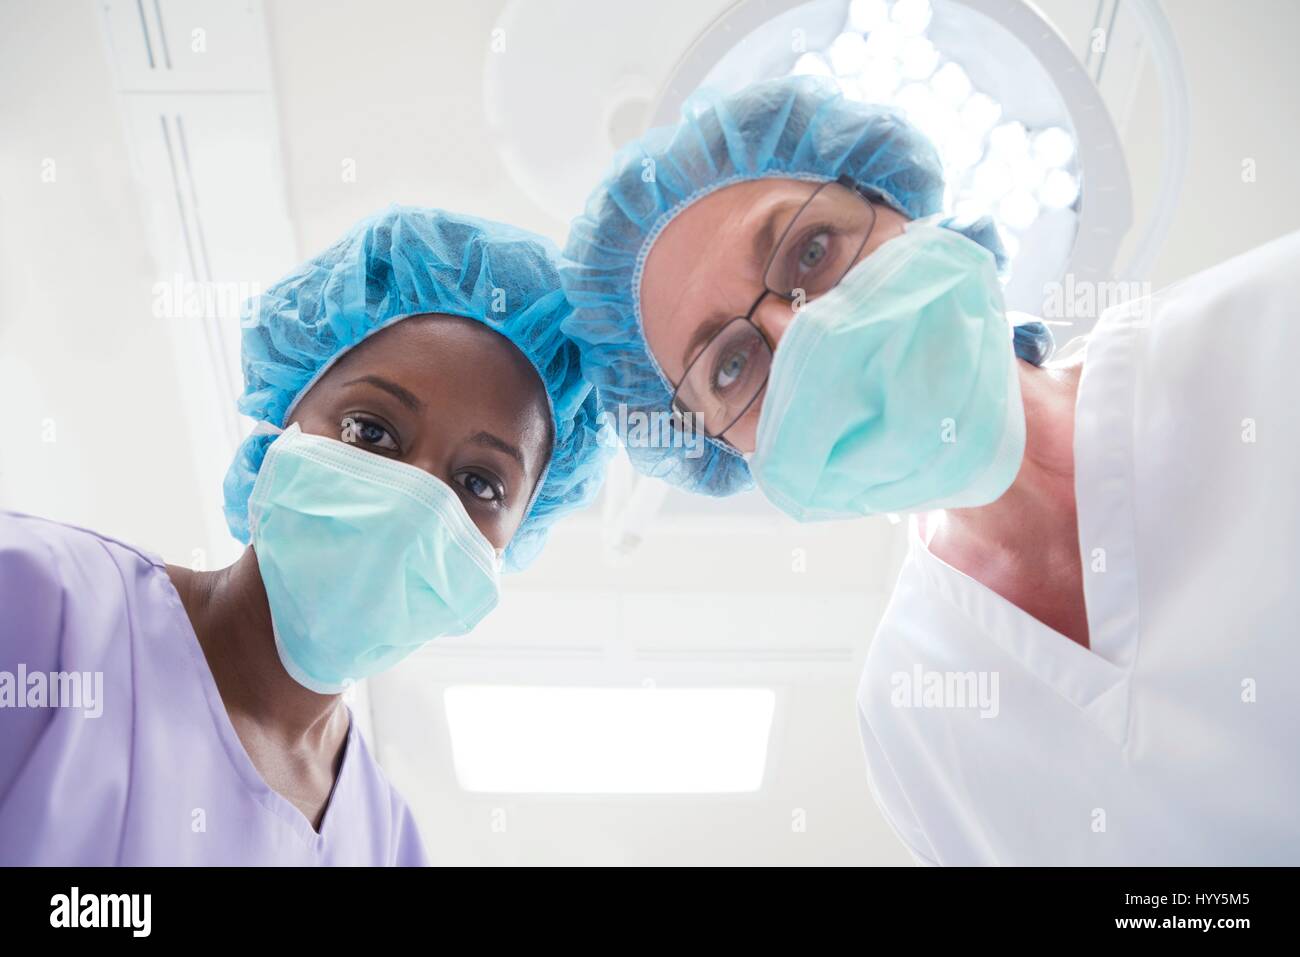 Dos mujeres cirujanos mirando hacia la cámara, perspectiva personal. Foto de stock